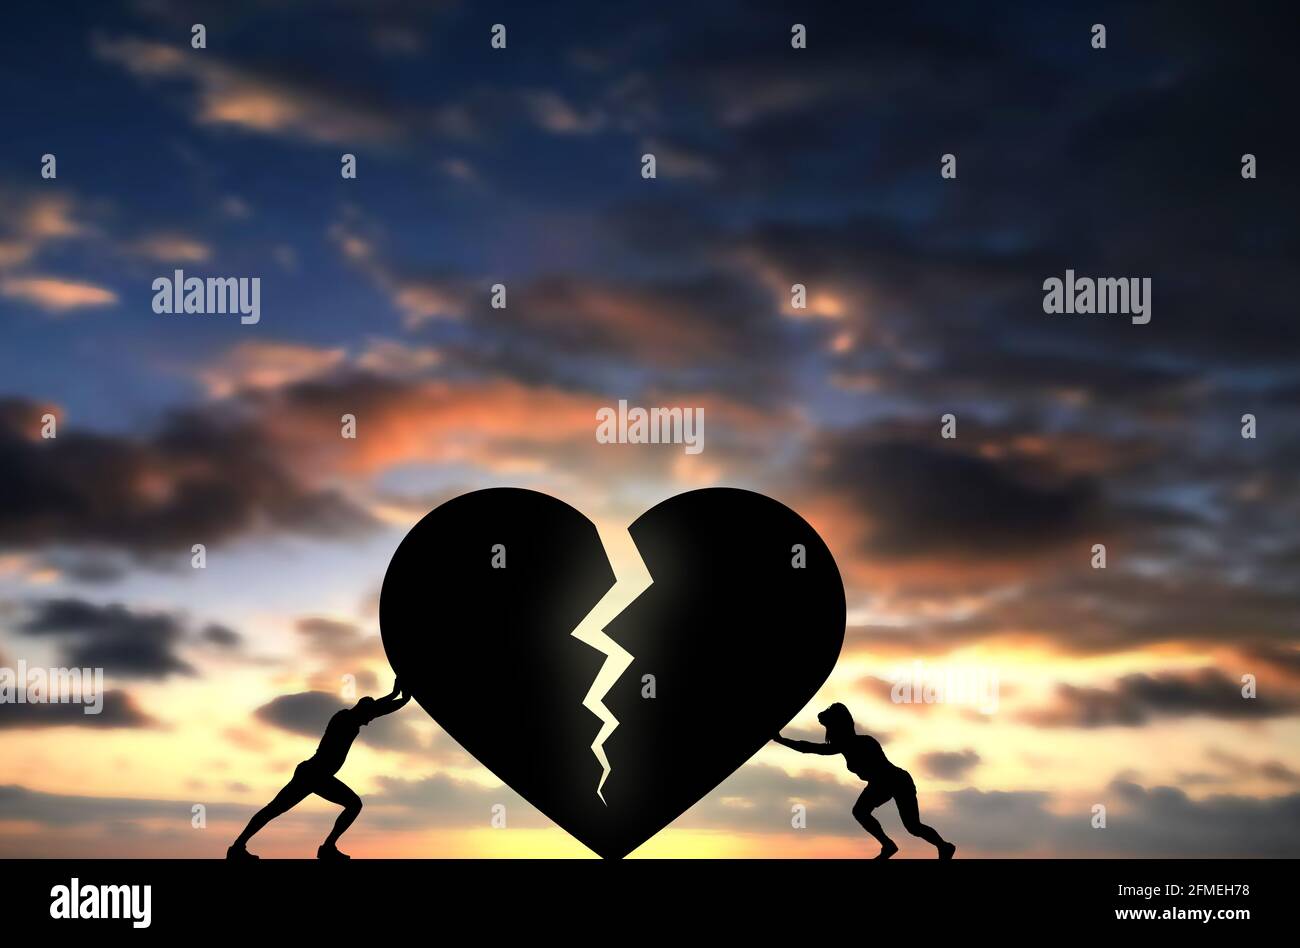 La pareja conecta dos partes del corazón roto, empujando apenas el símbolo del amor para permanecer conectado y vivo, el corazón del amor partes ensamblando por concepto de la pareja Foto de stock